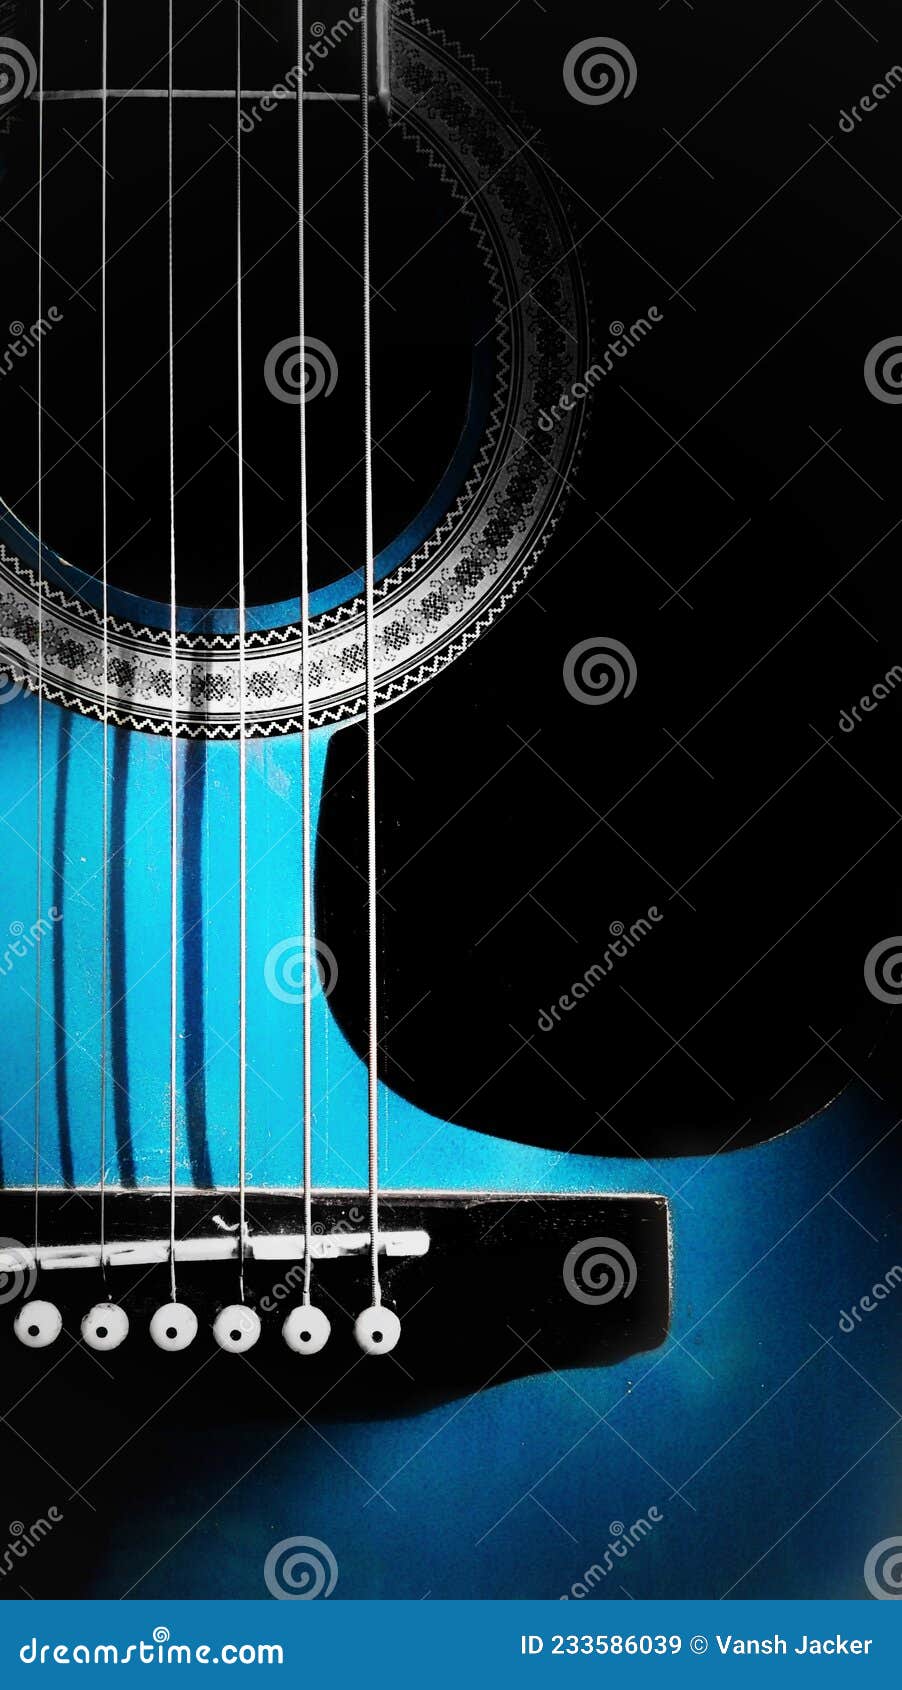 HD Guitar Wallpaper for Print Stock Image - Image of acoustic, guitar:  233586039